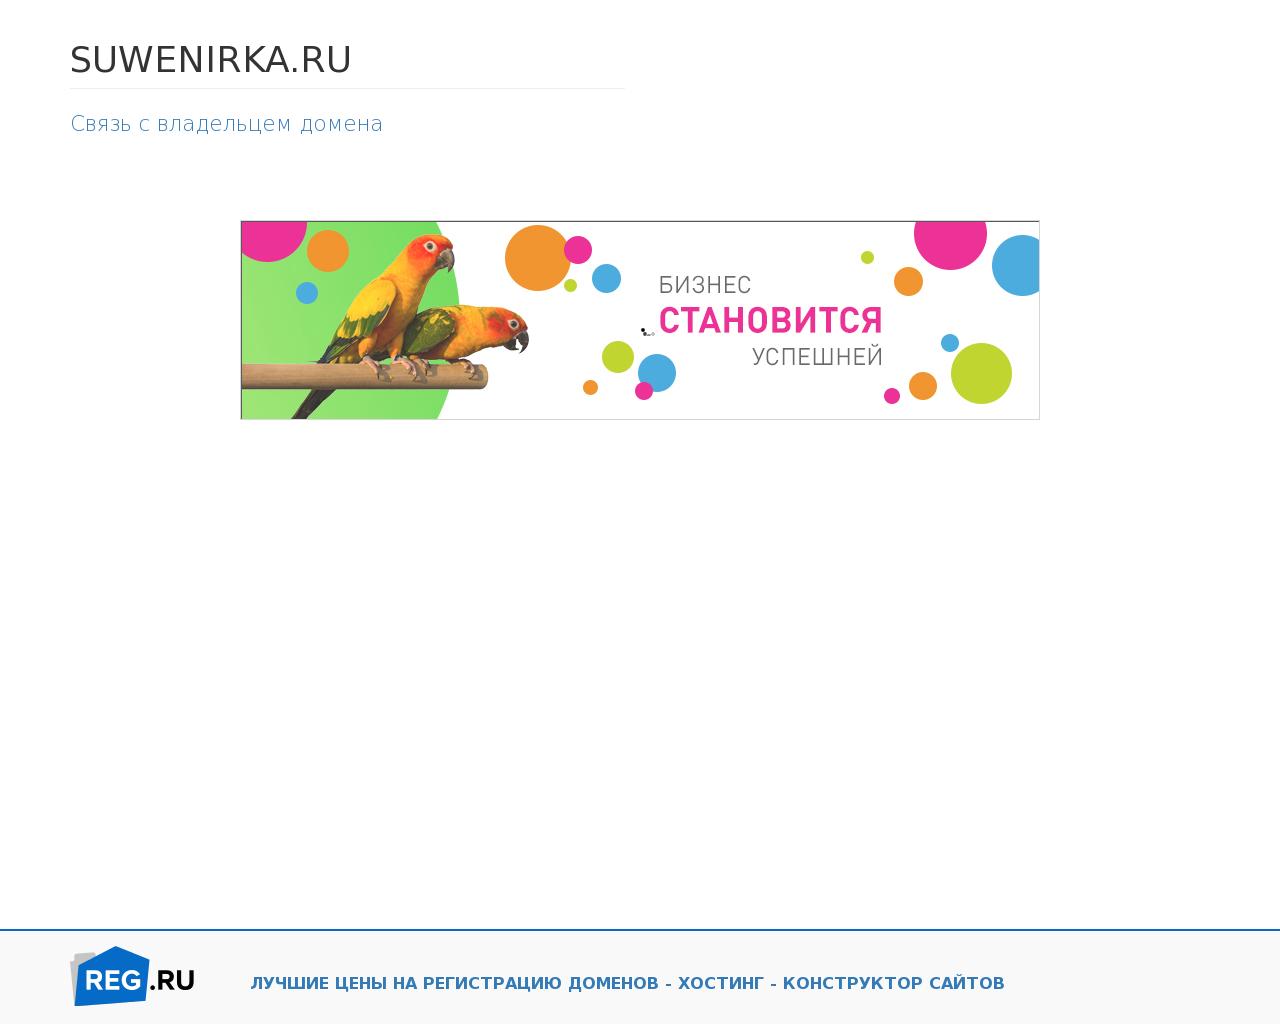 Изображение сайта suwenirka.ru в разрешении 1280x1024